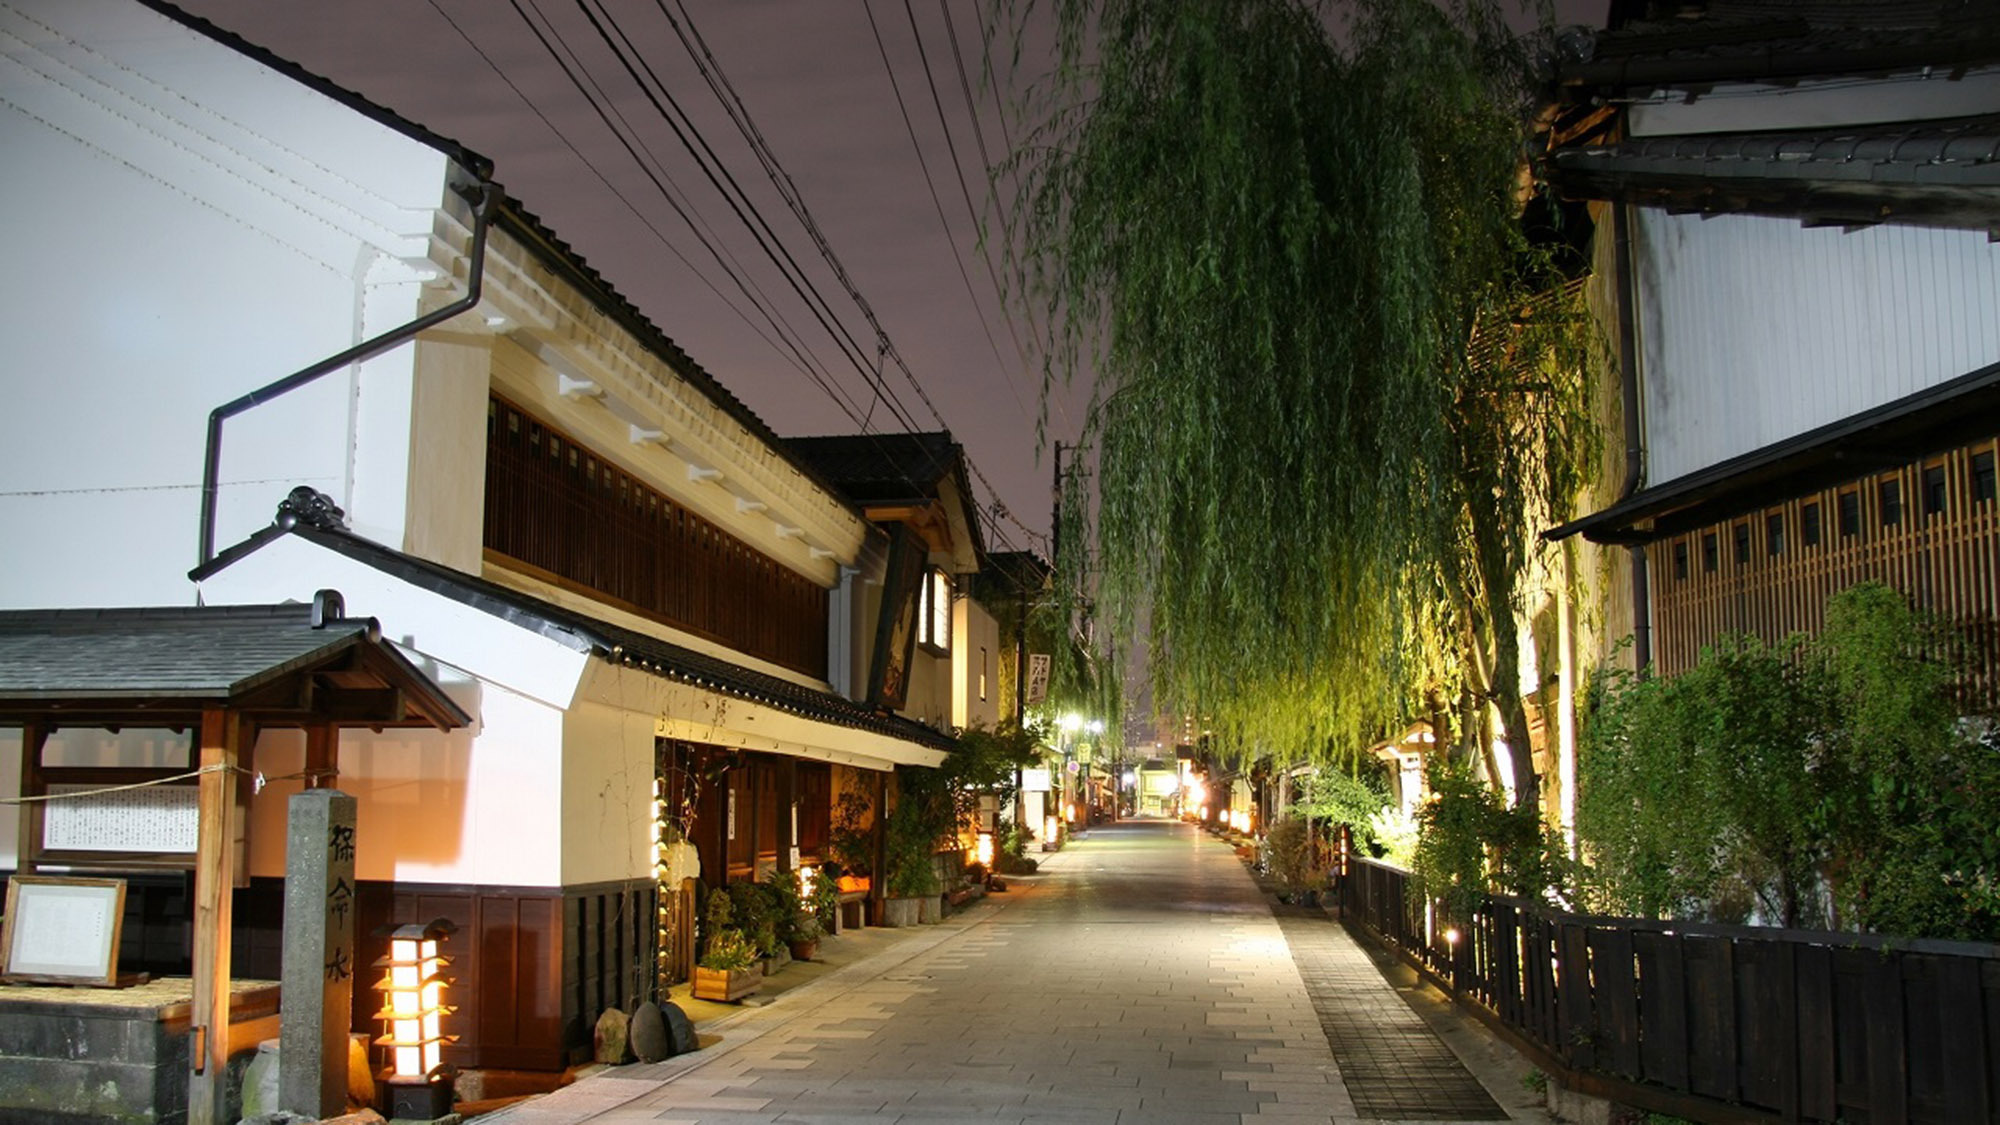 ・【北国街道・柳町】江戸時代の面影を残した通りは、夜もまた風情があります